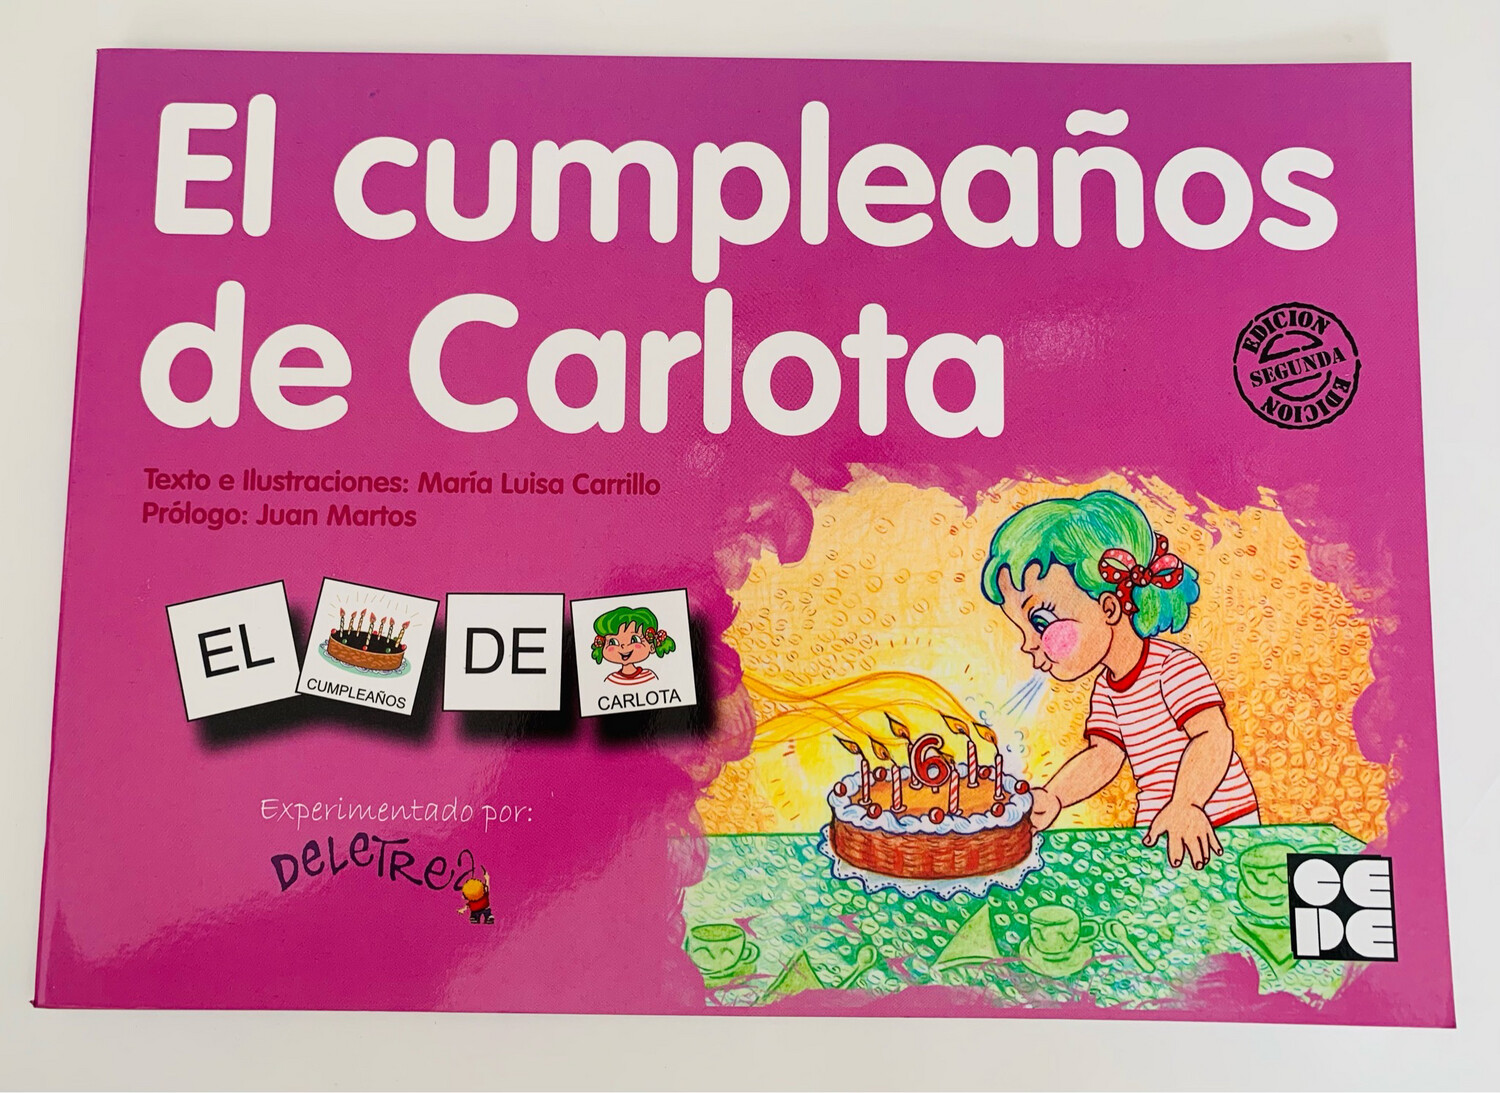 El Cumpleaños de Carlota Pictogramas: lecturas fáciles para niños con dificultades 8 Pictogramas 